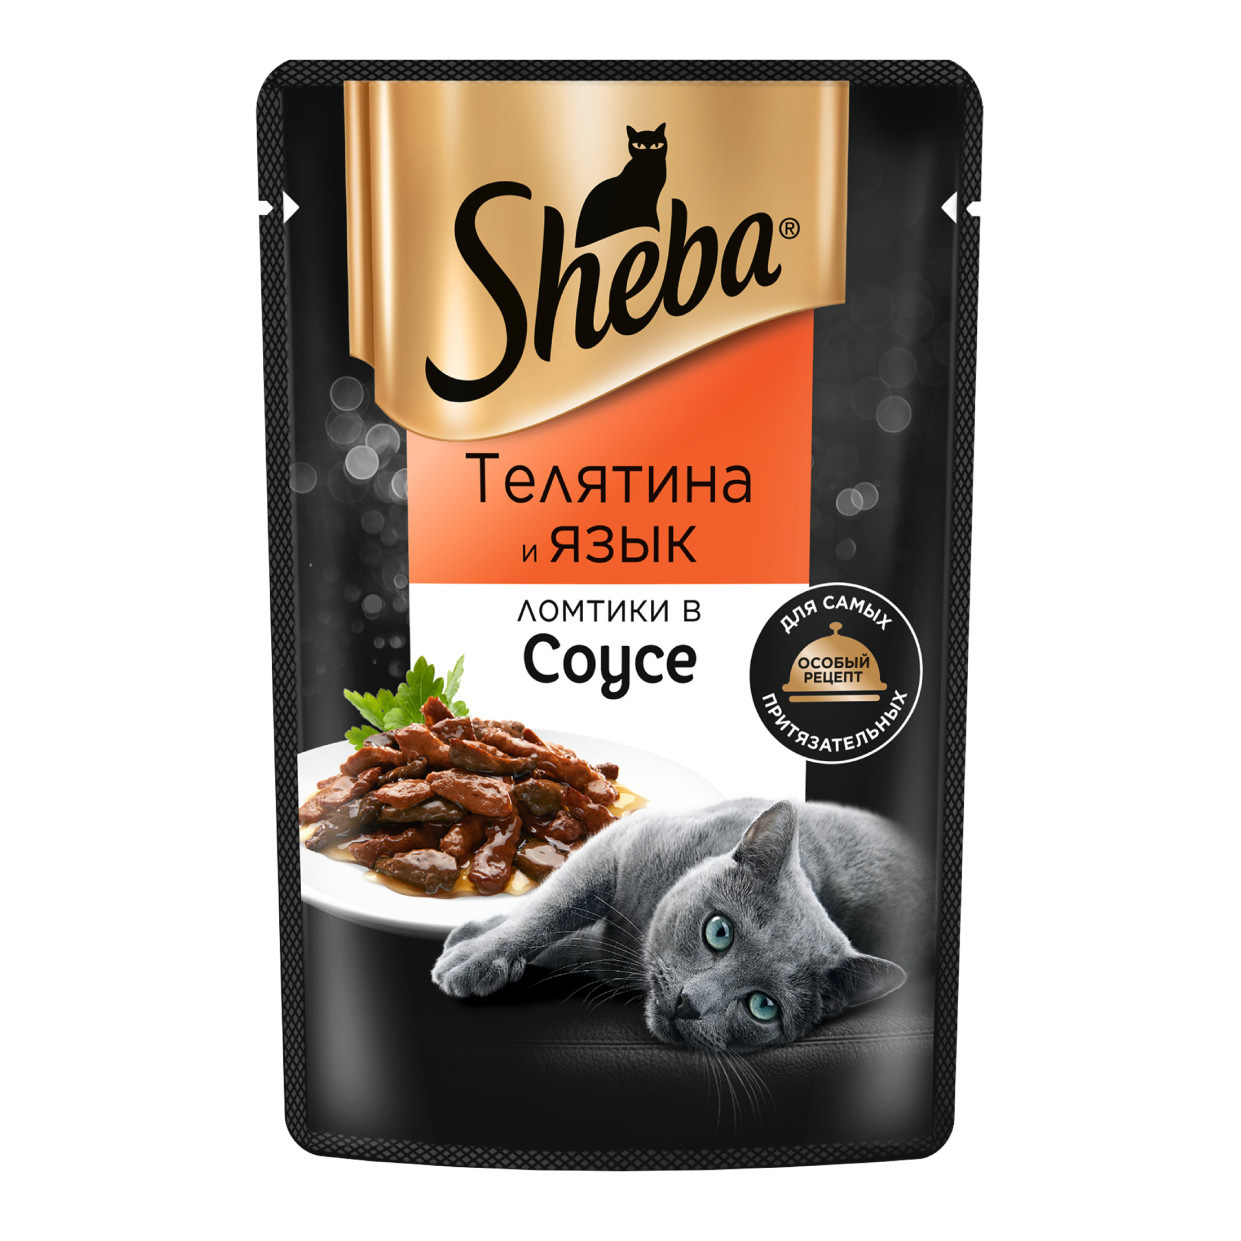 Sheba влажный корм для кошек «Ломтики в соусе с телятиной и языком» (75 г)